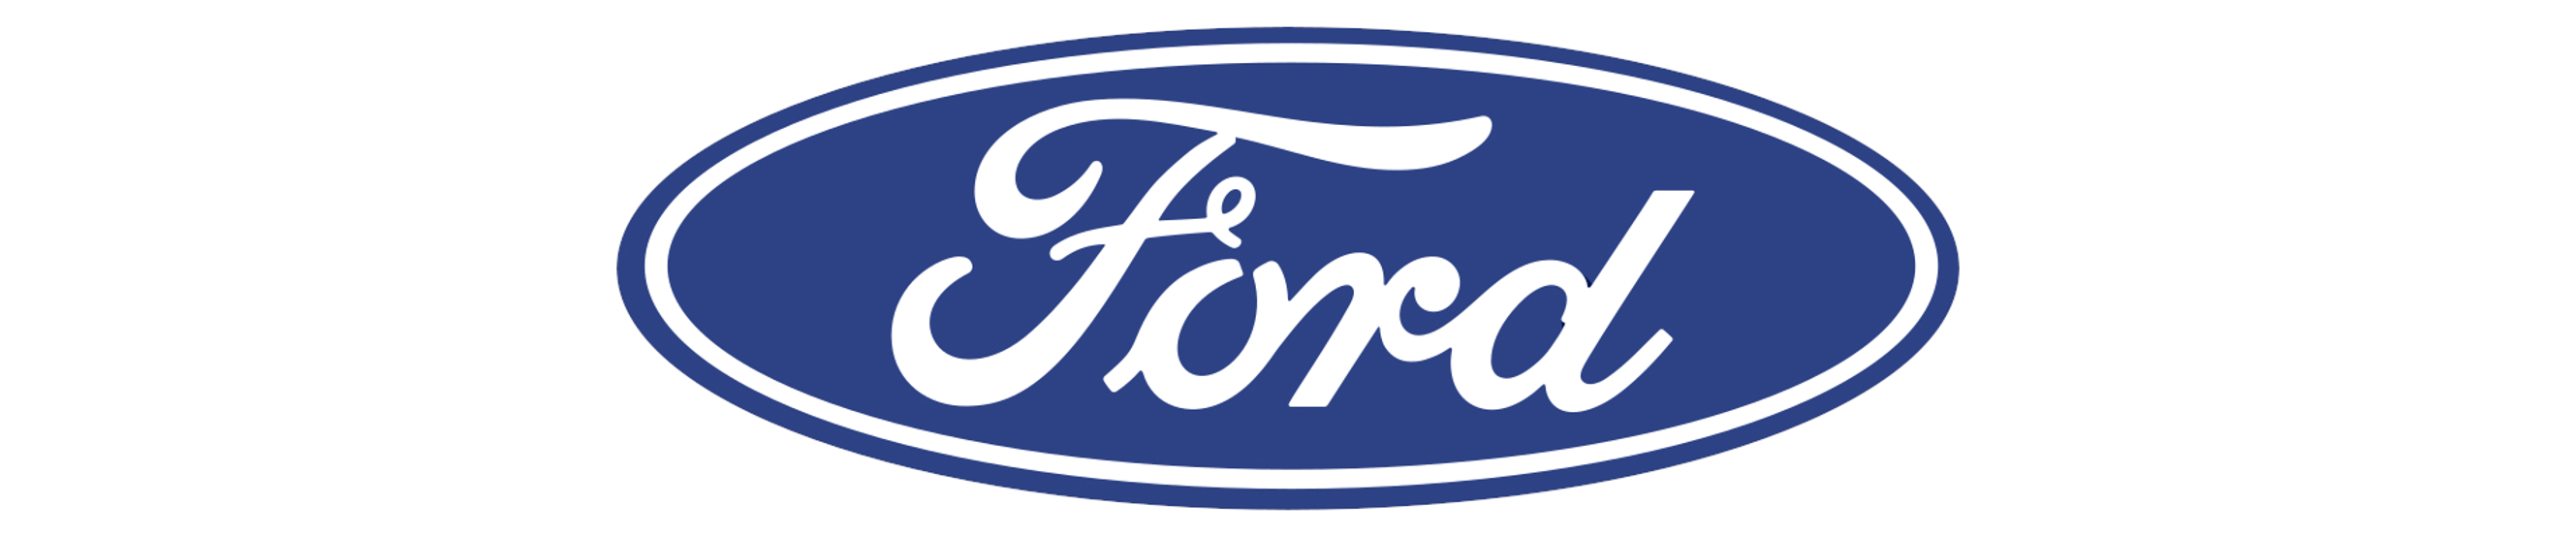 Ford_logo_banner.jpg